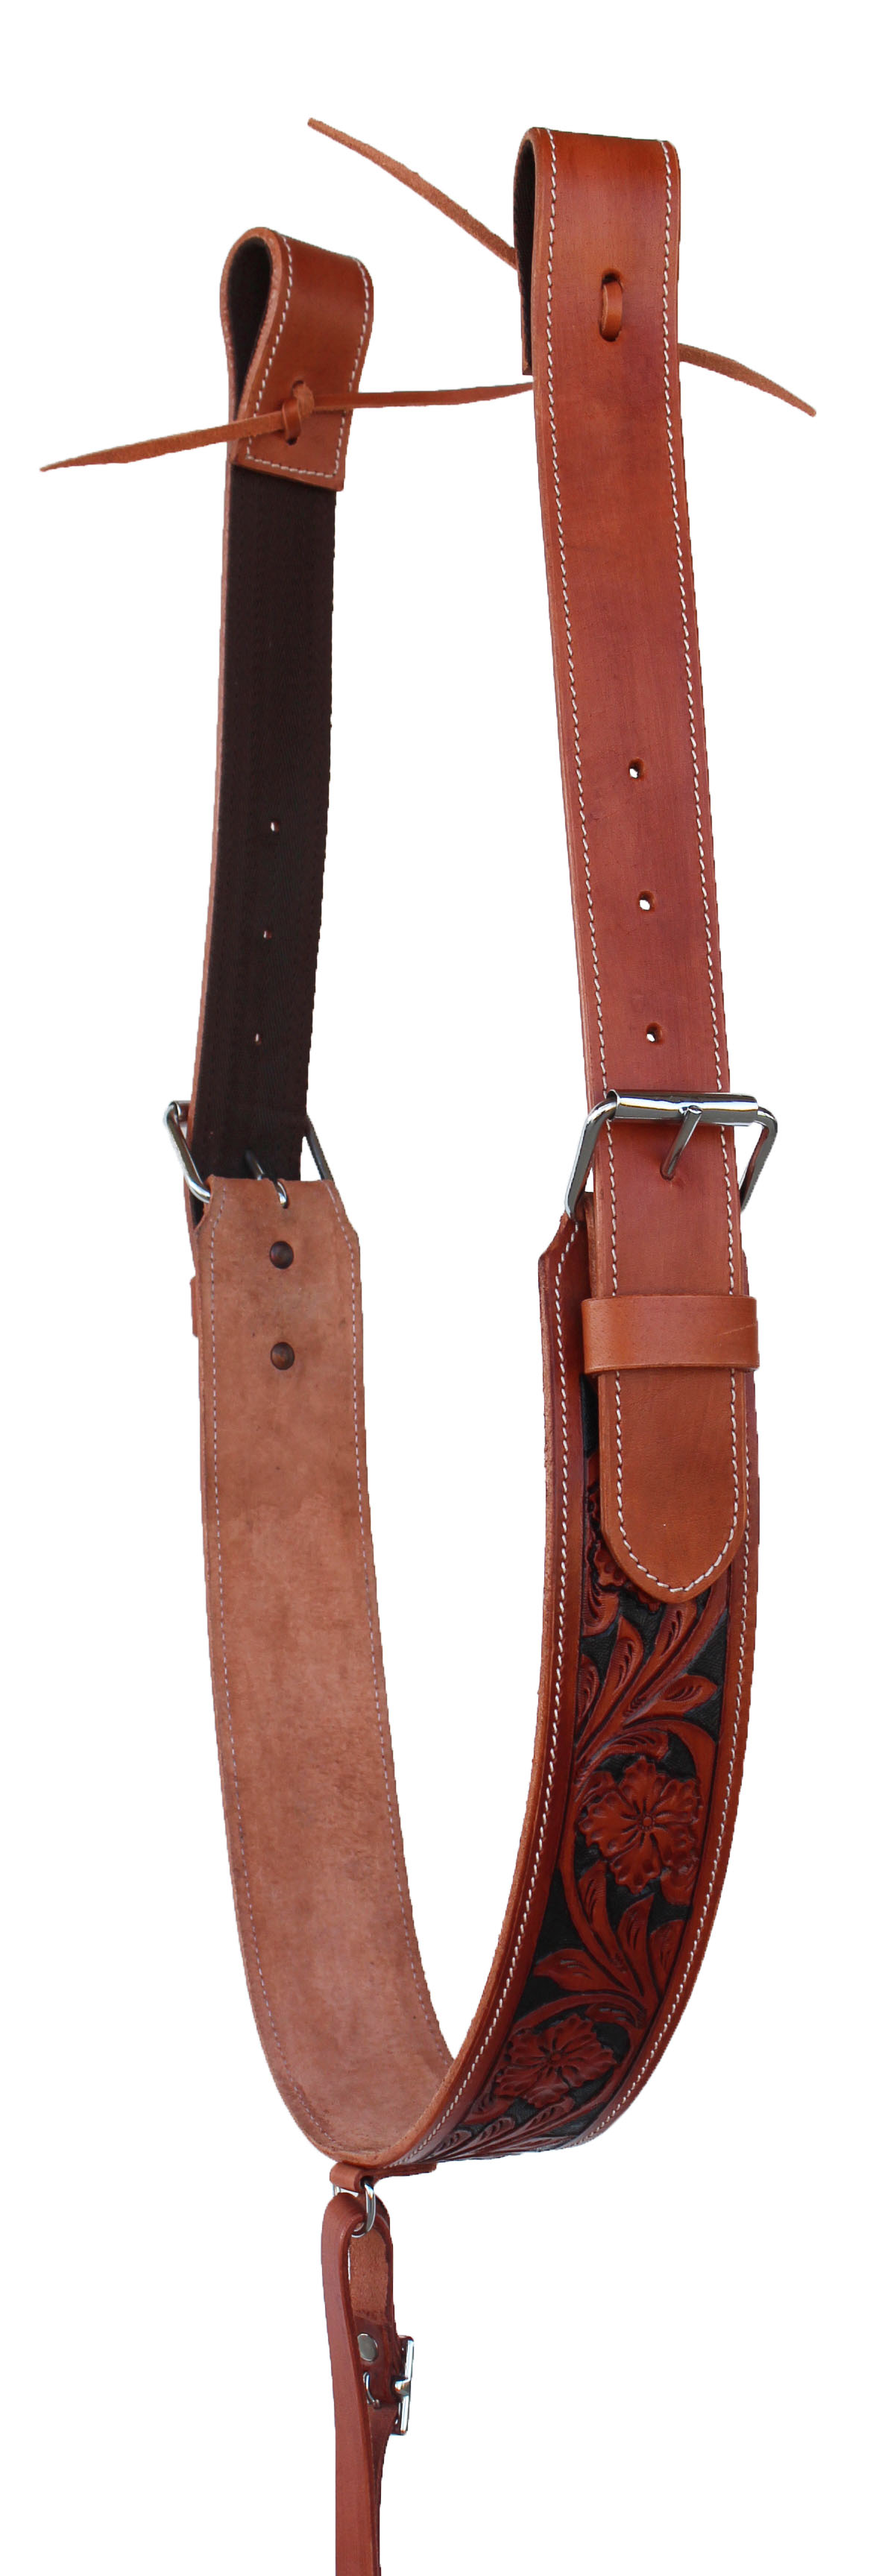 Challenger Tack Horse Western Carved Leather Rear Flank Back Cinch Girth Saddle Billets 9774-80 